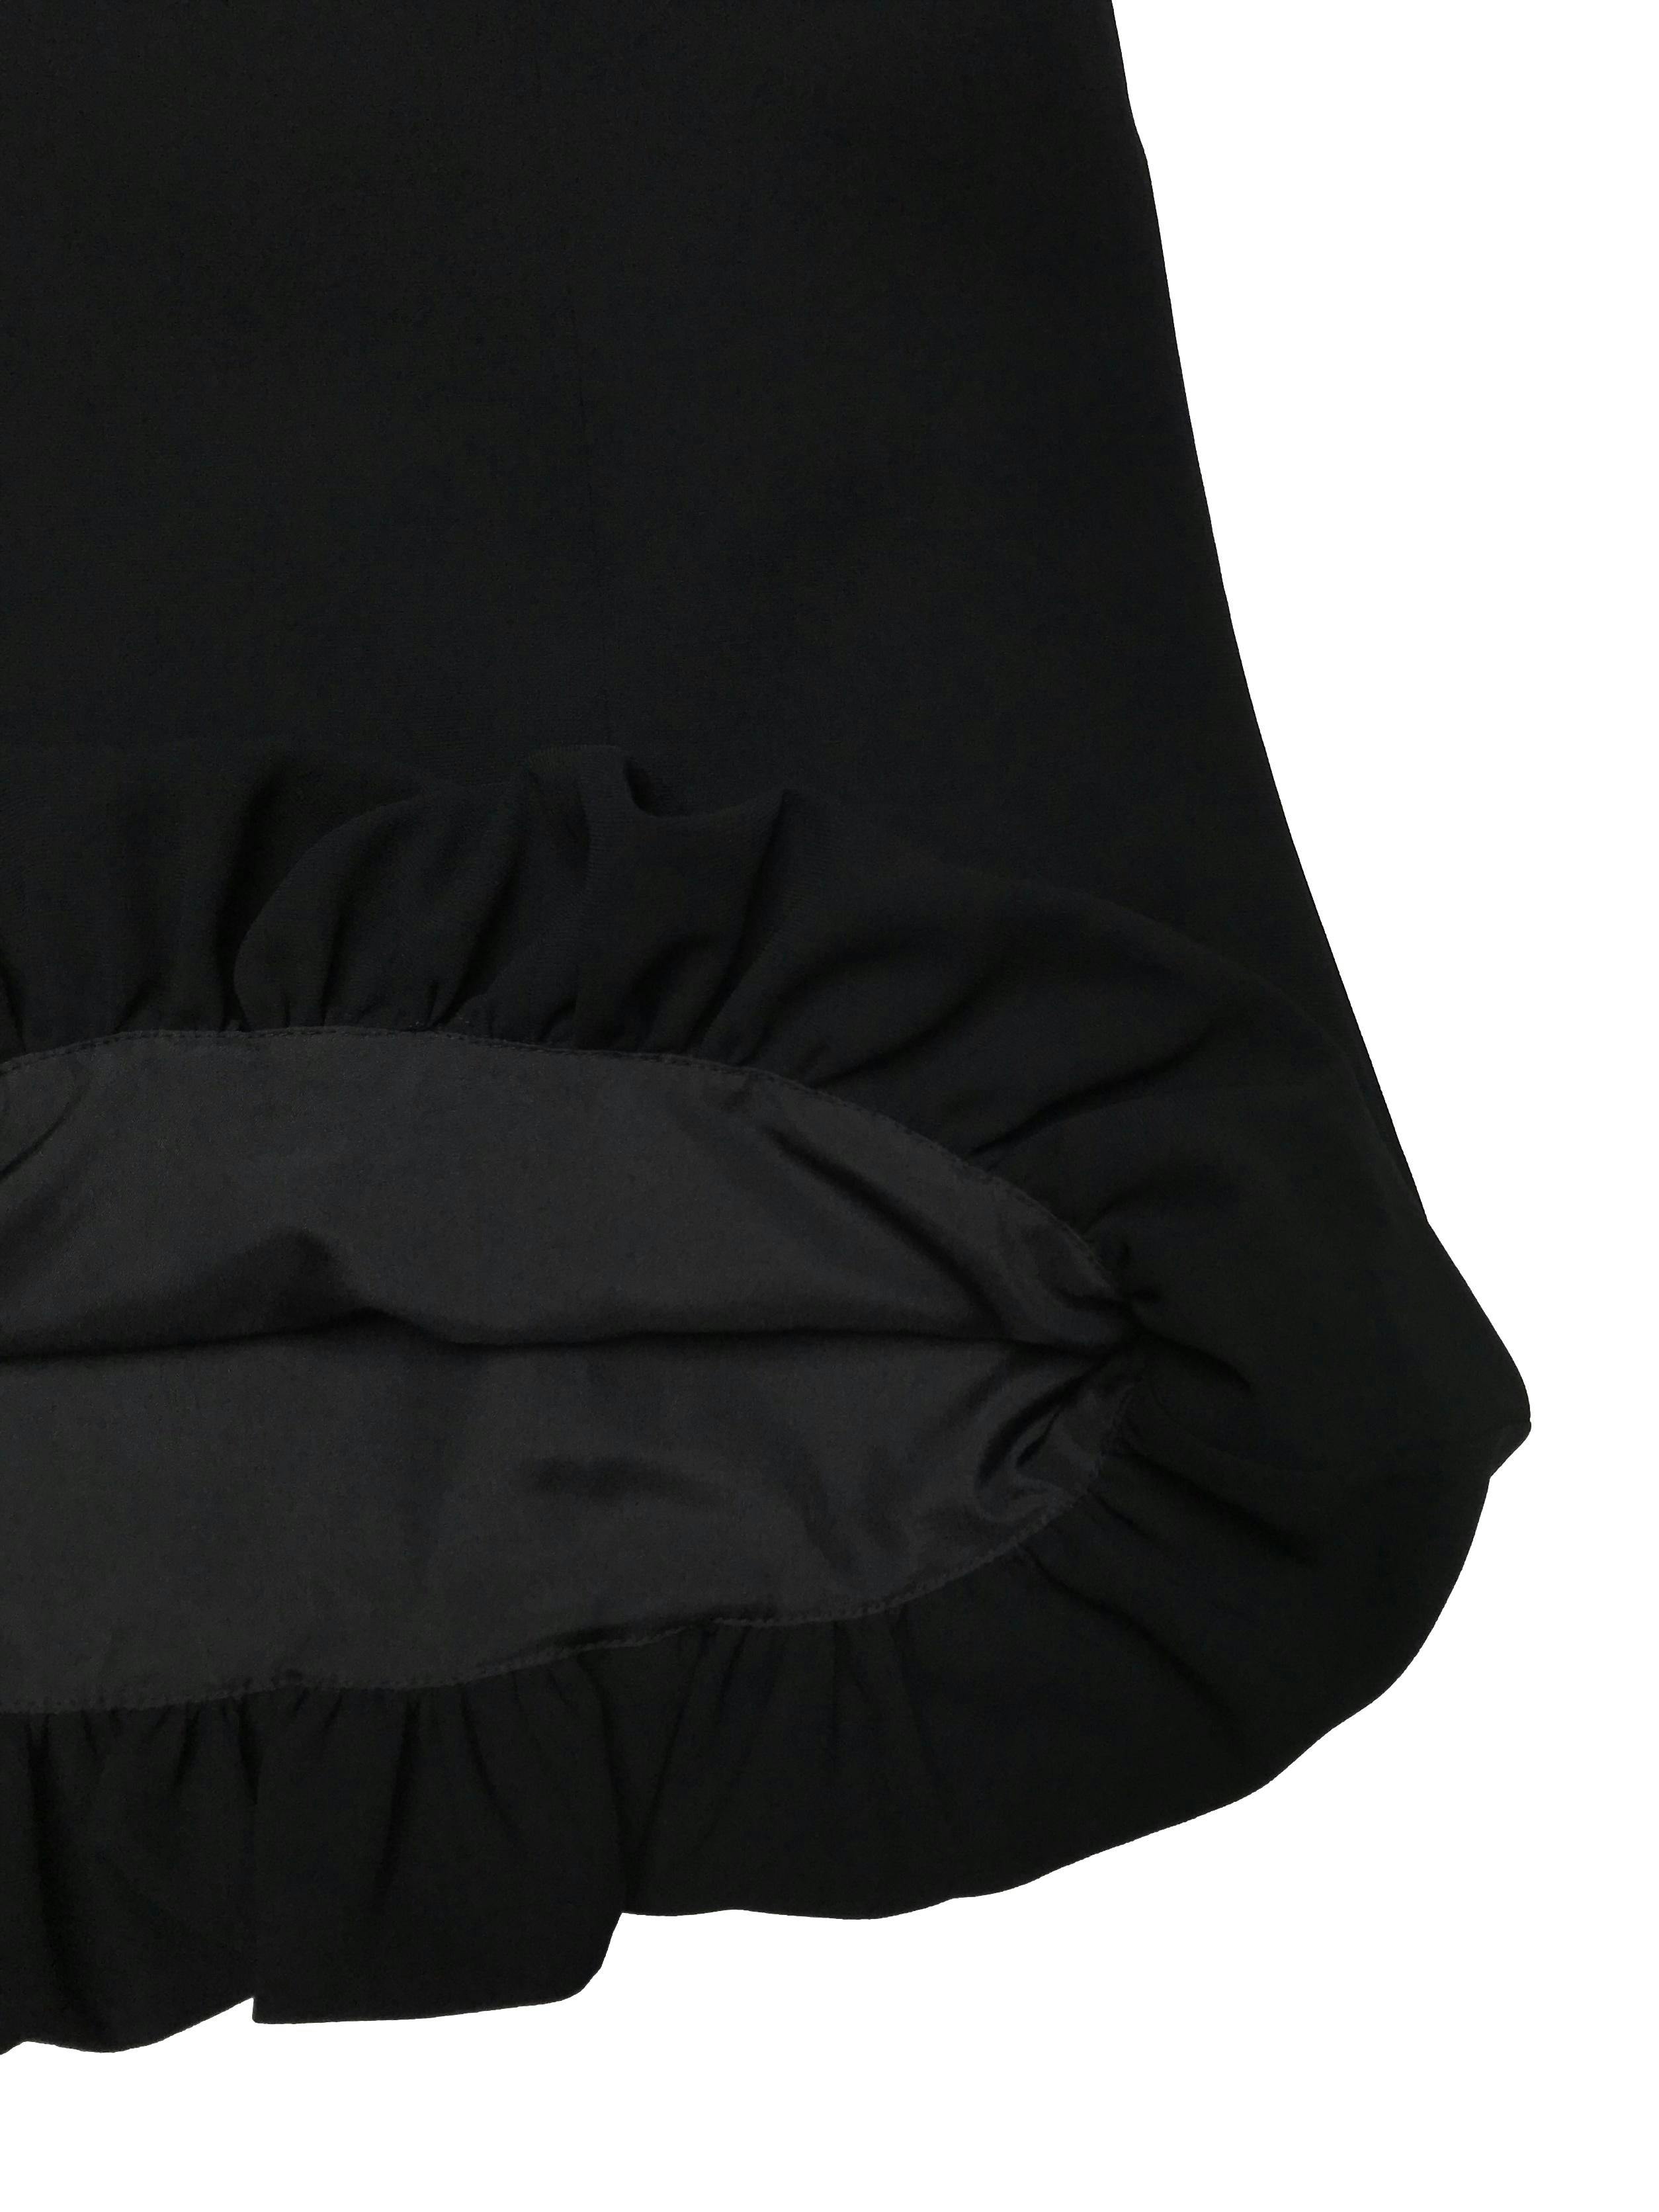 Falda formal Fina con basta globo, es forrada y tiene cierre lateral. Cintura 72cm Largo 55cm